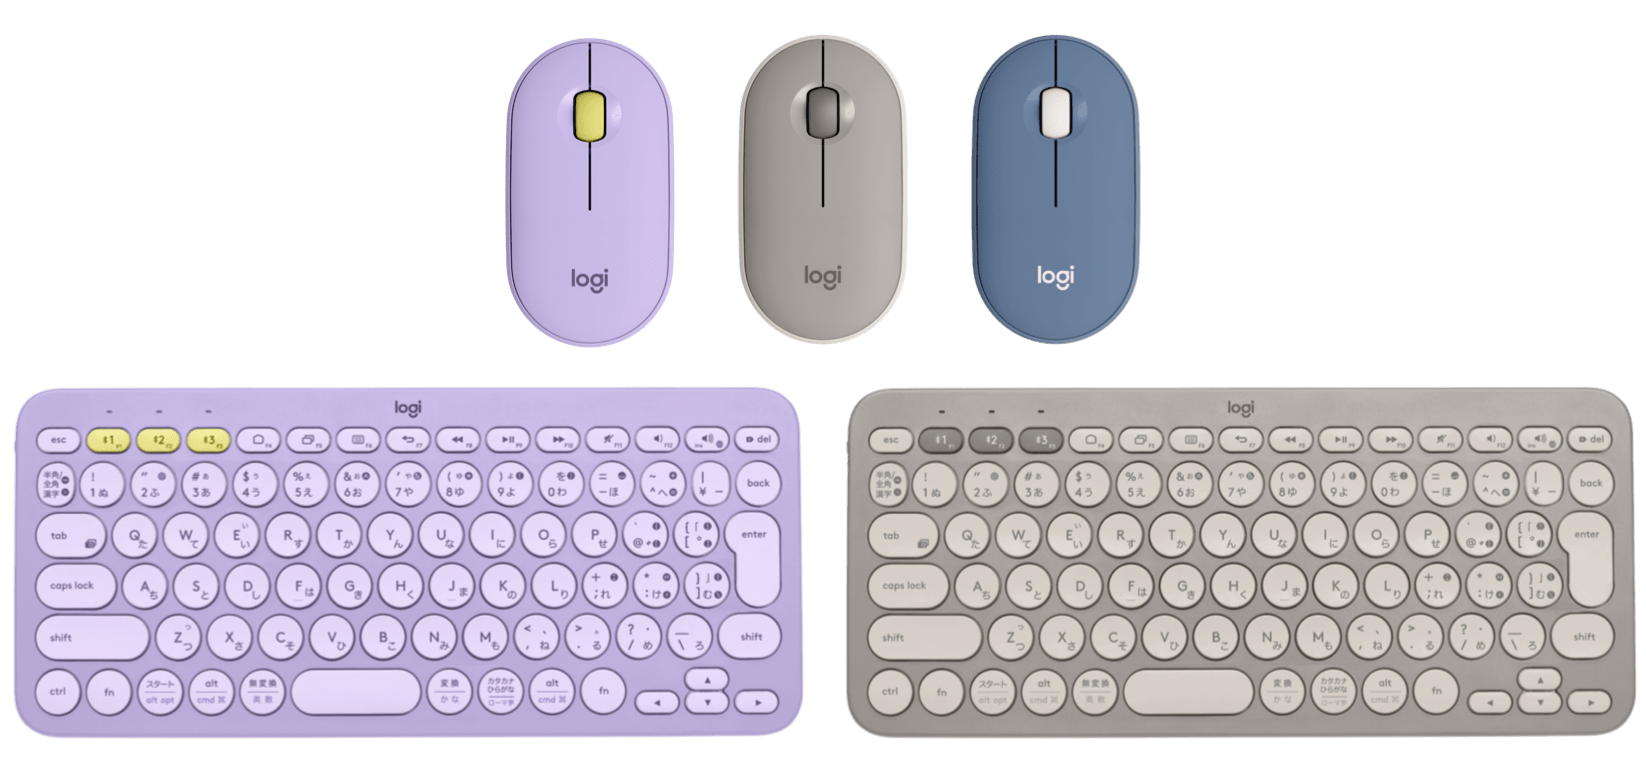 ロジクール、静音薄型マウス「Pebble M350」とマルチデバイスキーボード「K380」の新色発売